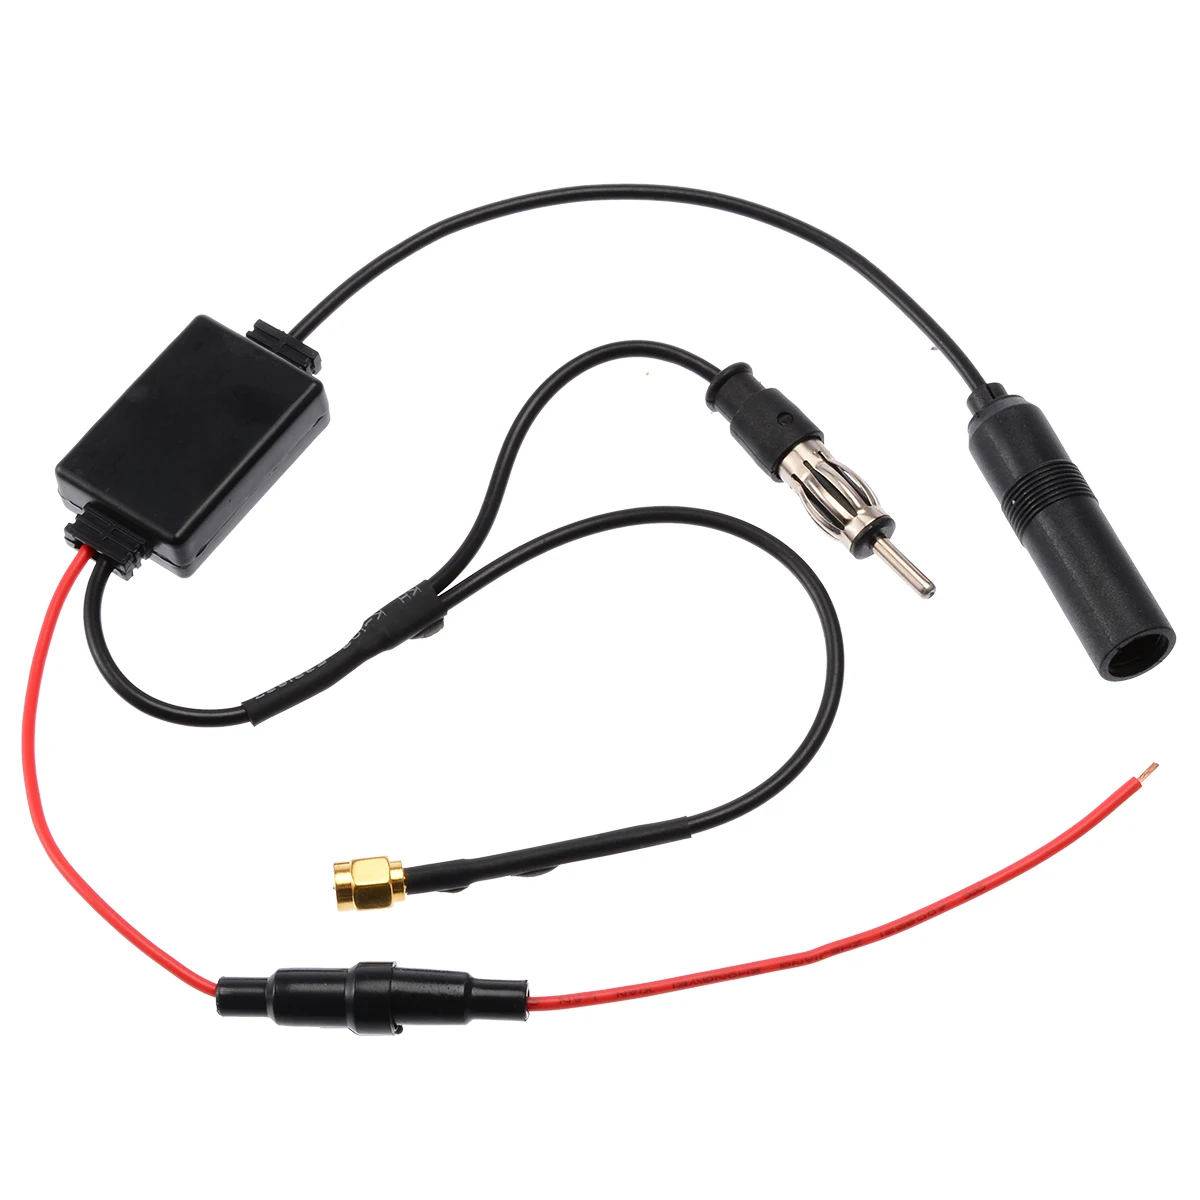 

Mayitr 1 шт. автомобильный FM/AM DAB + Антенный разветвитель адаптер кабель для автомобиля 88-108 МГц SMB конвертер автомобильные антенны для радио